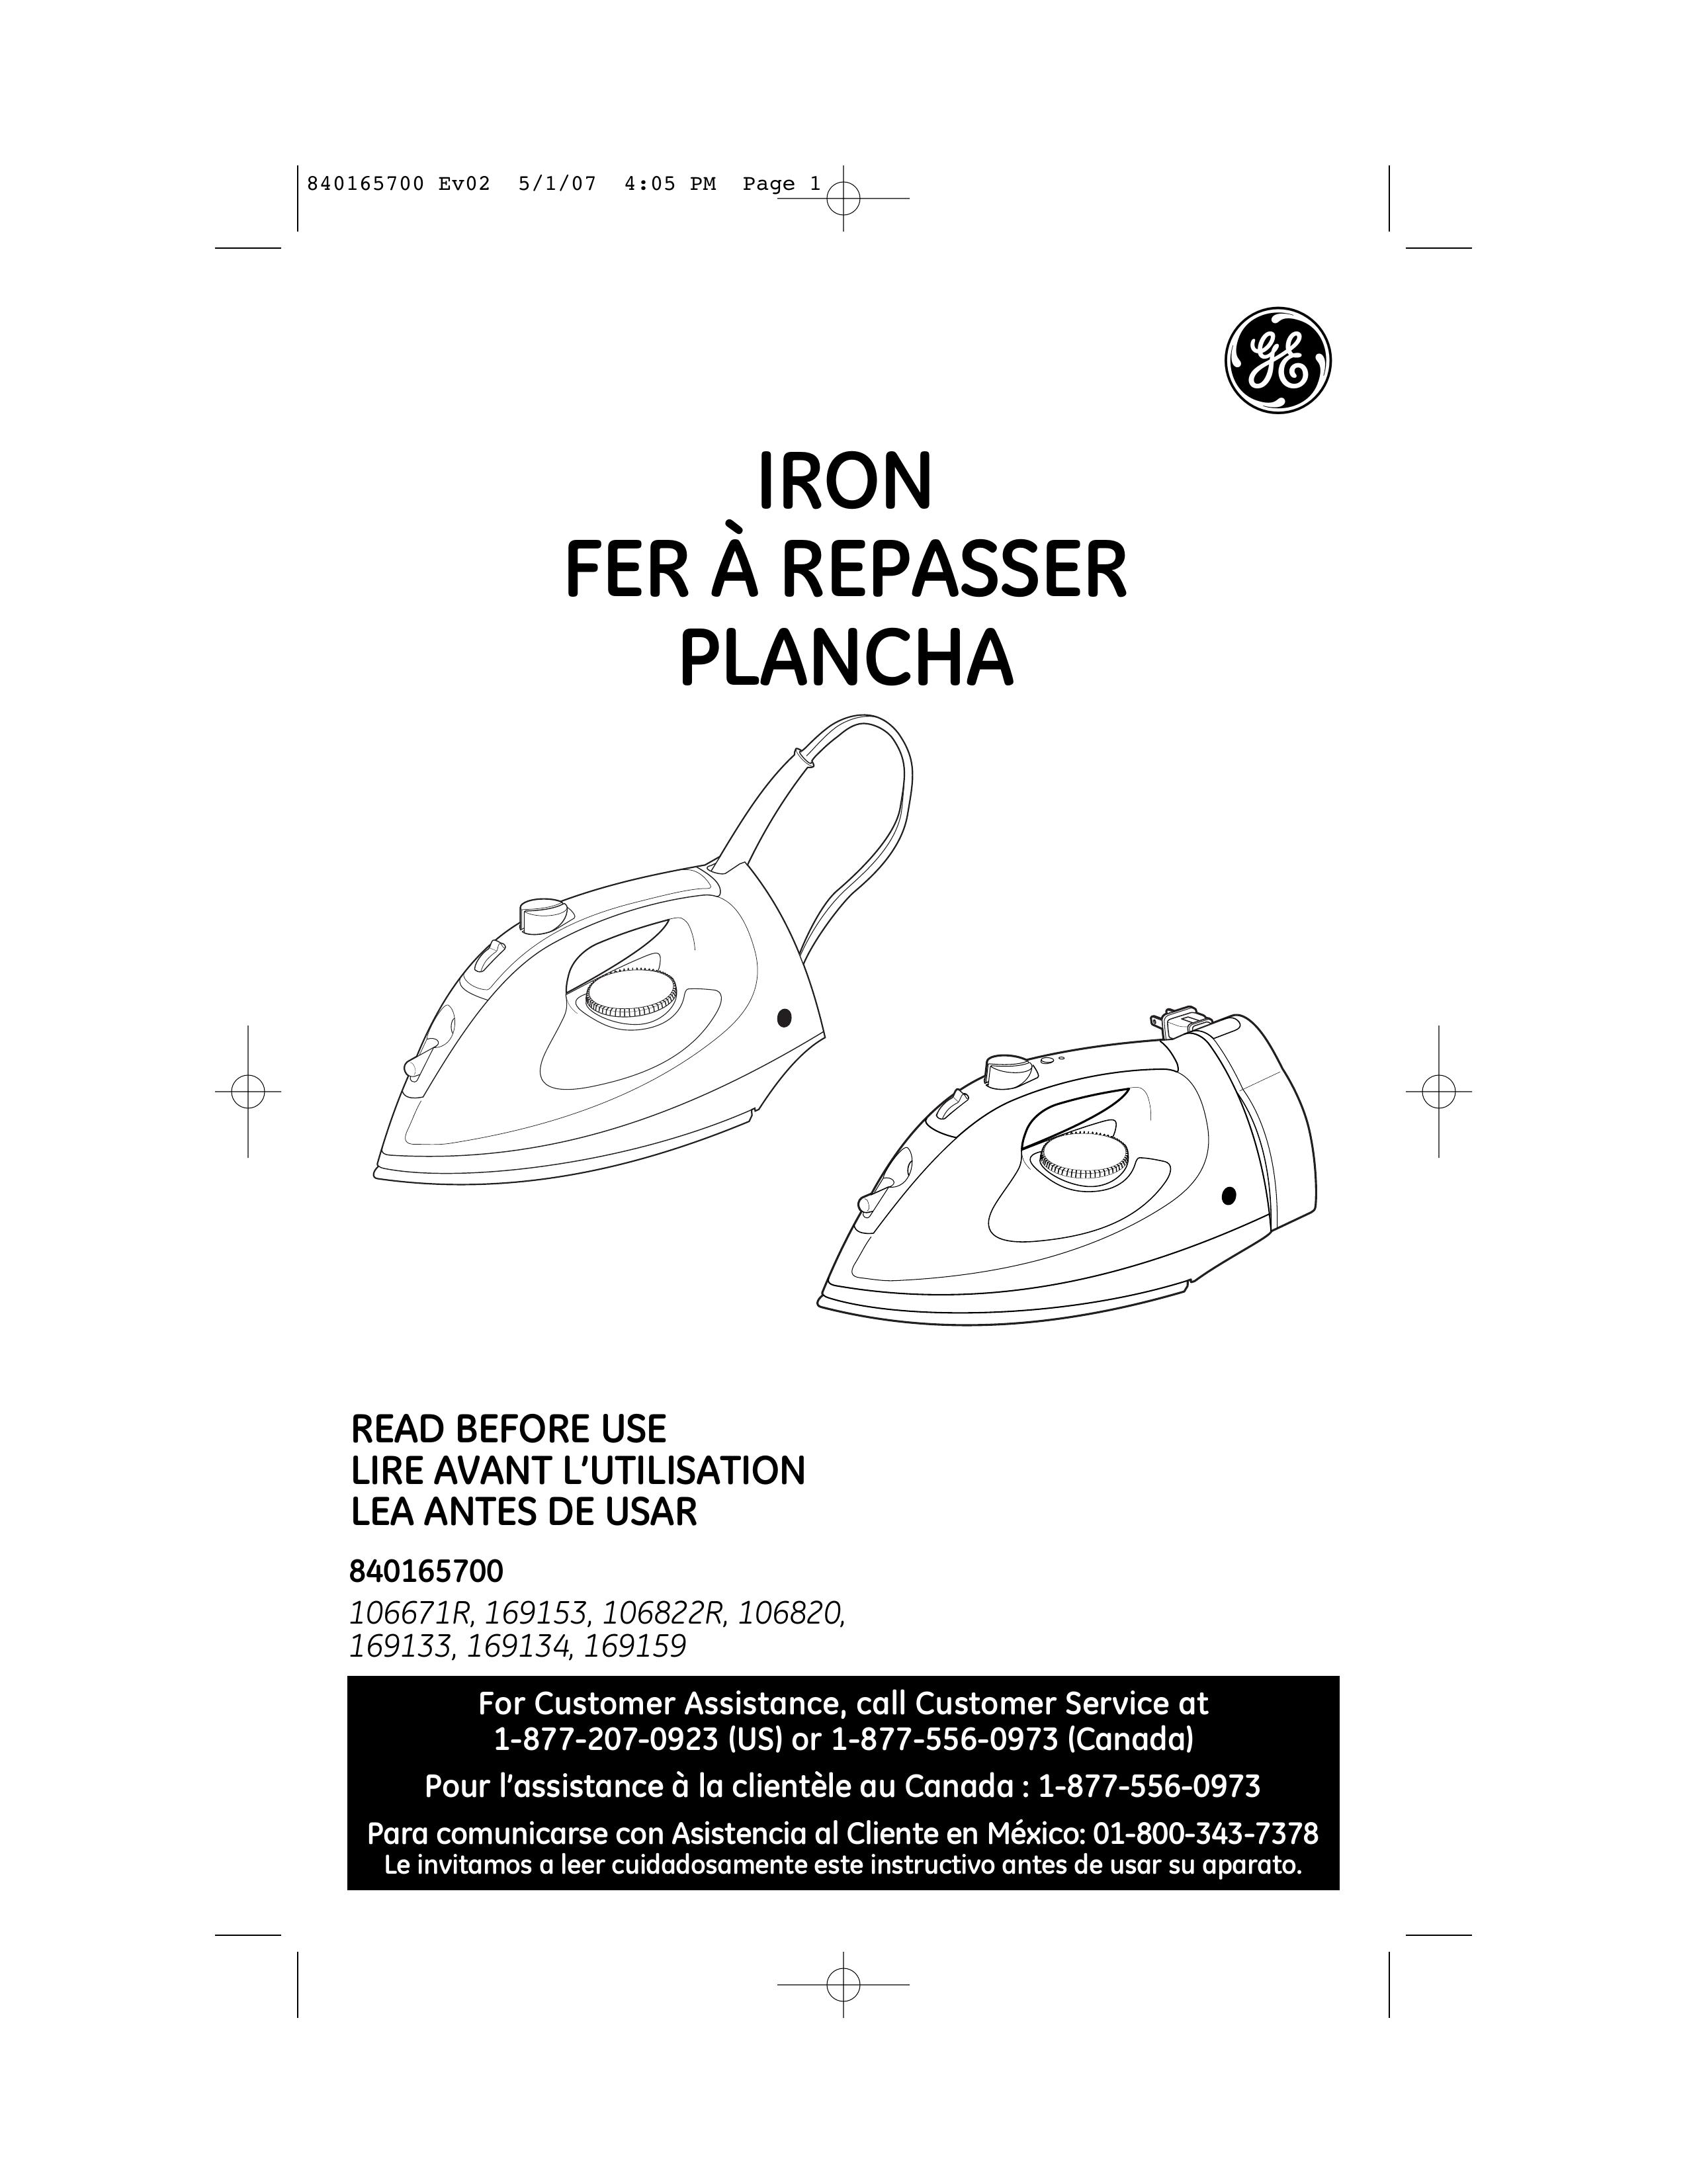 GE 169159 Iron User Manual